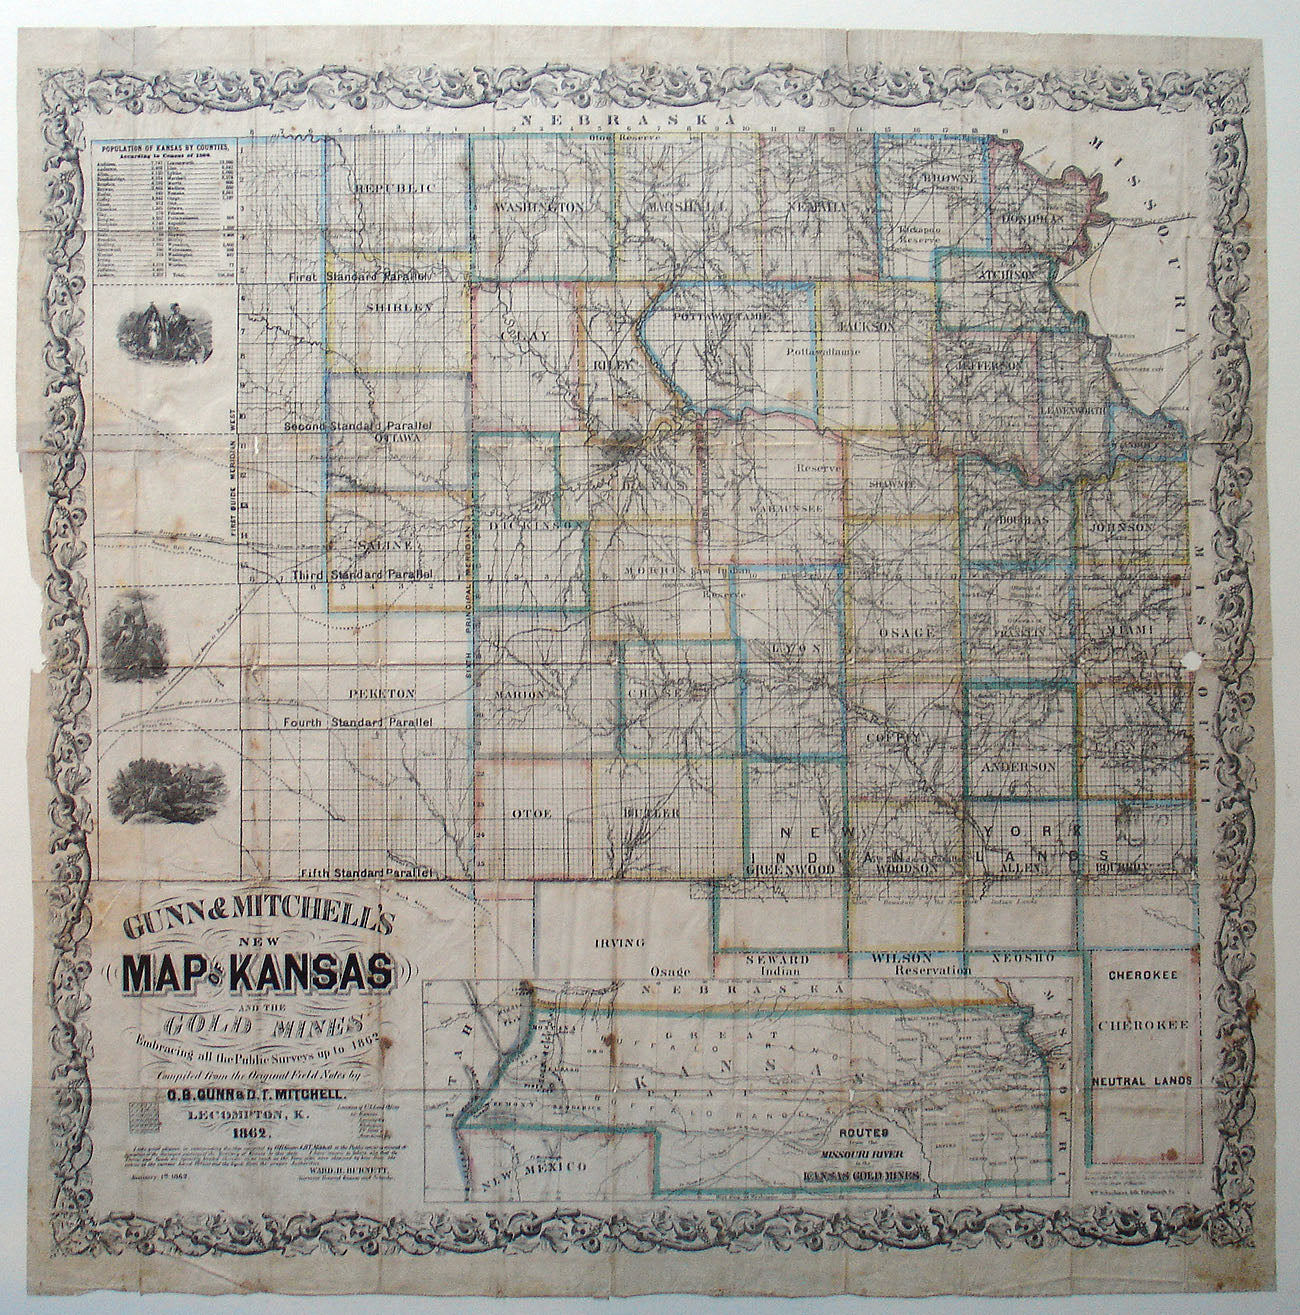 (CO. - KS.) New Map of Kansas